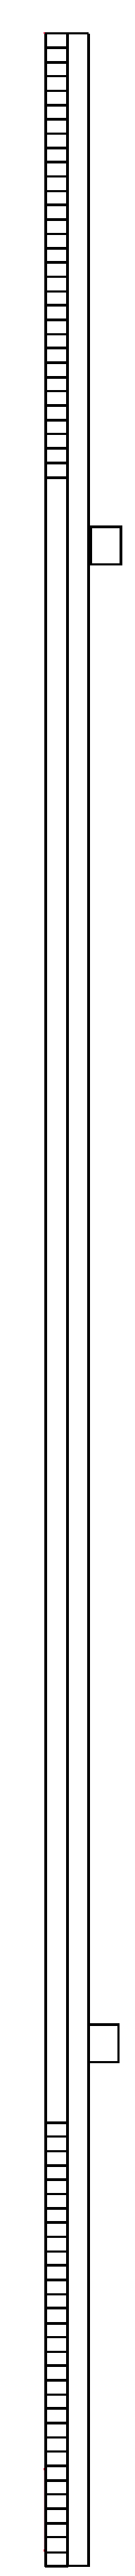 ROTO FRANK -  Prolunga PATIO Z per chiusure supplementari verticale per quarto lato - gr / dim. 1490 - lbb/hbb 1601 - 2000